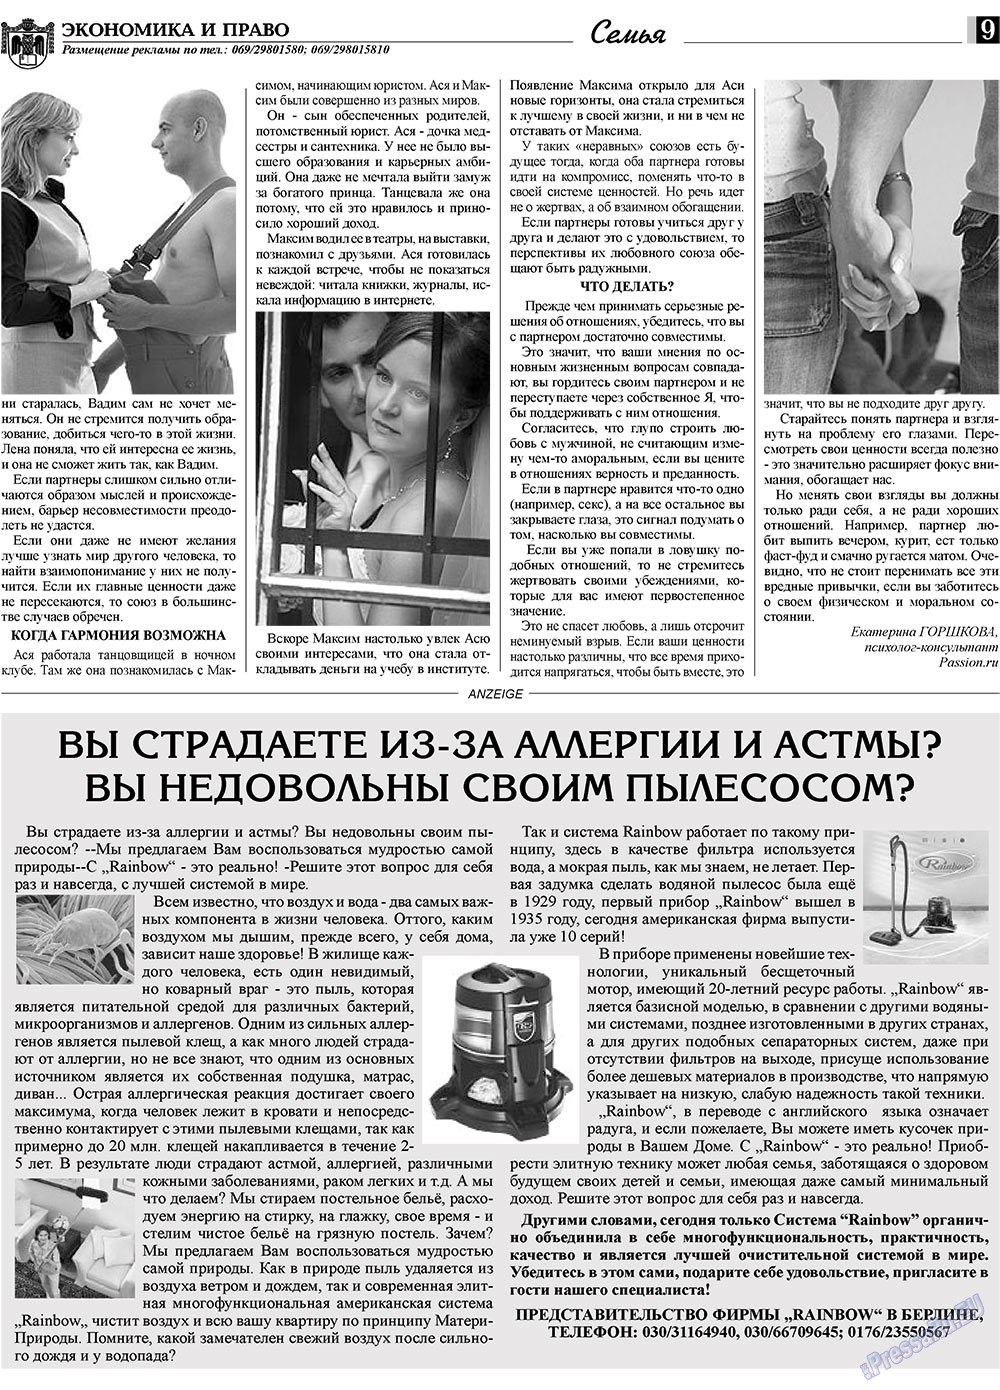 Экономика и право, газета. 2010 №3 стр.9